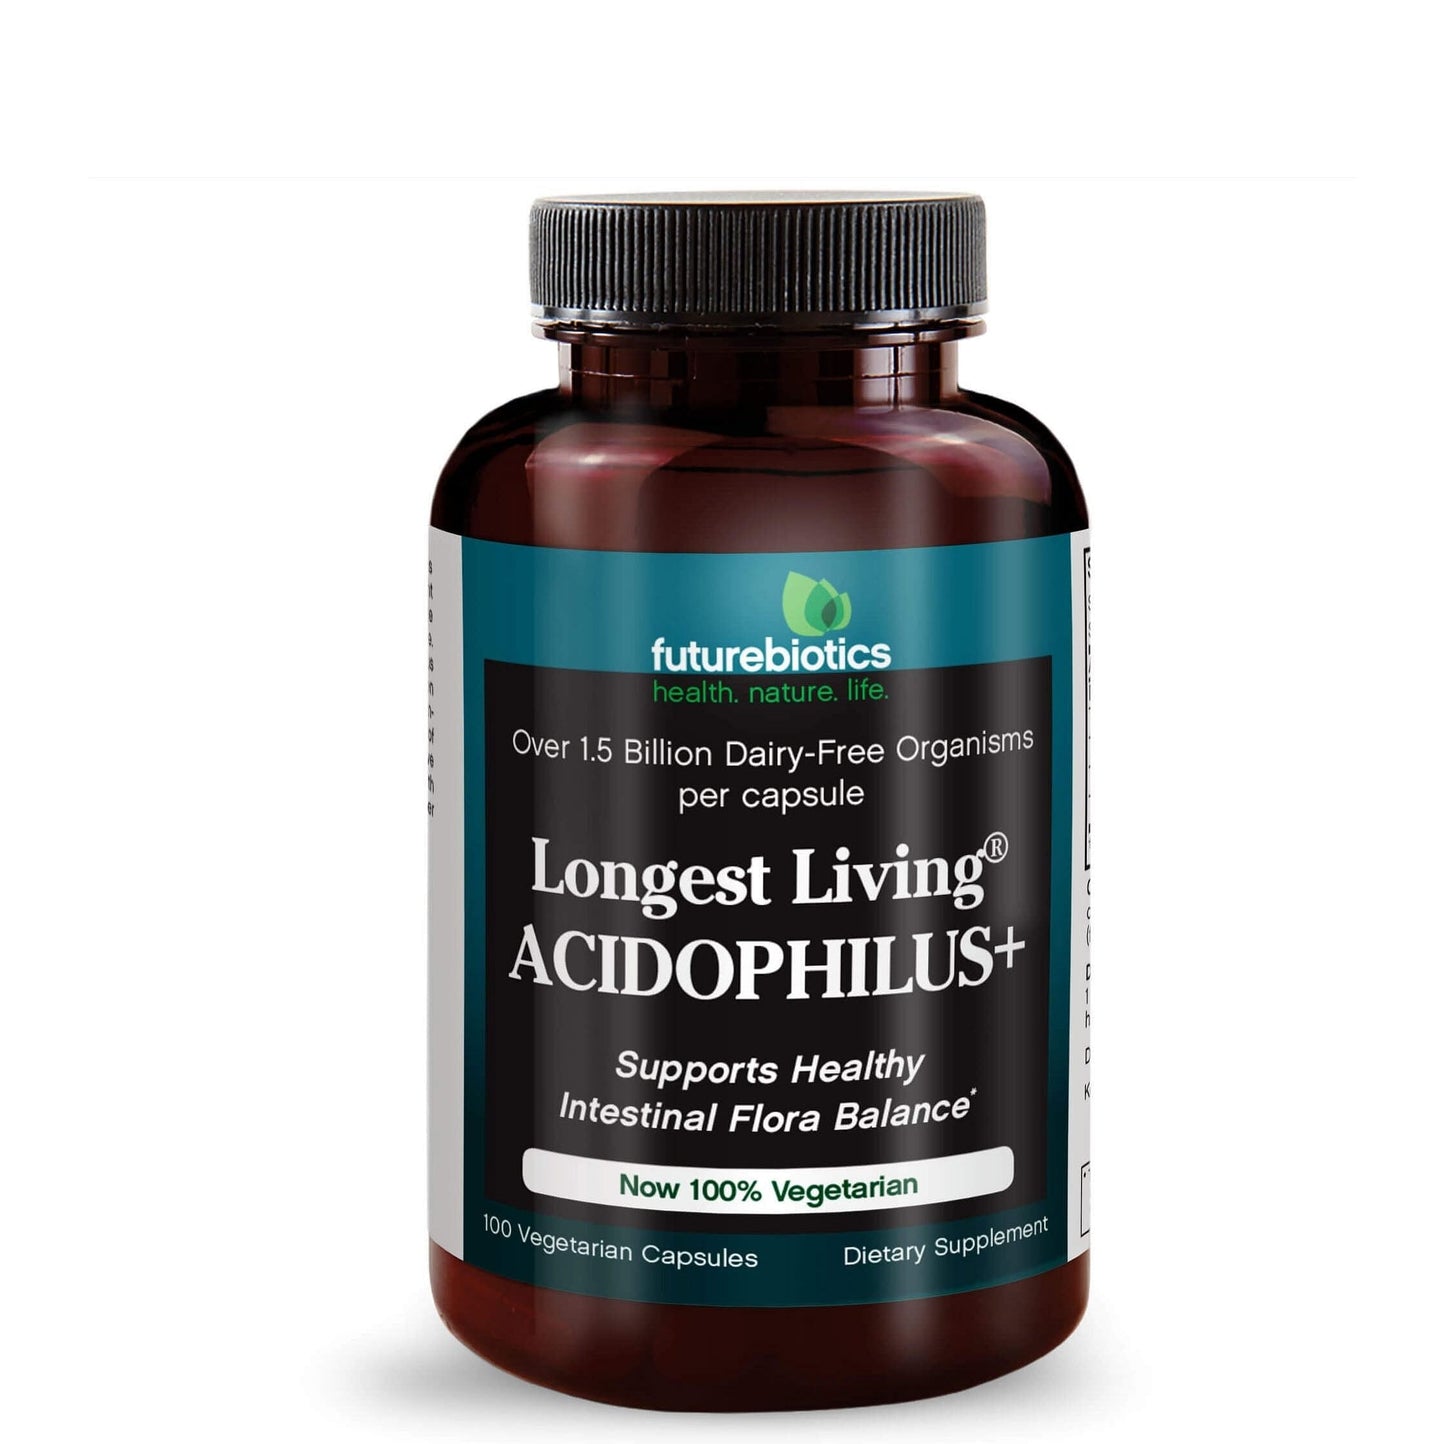 Futurebiotics Longest Living Acidophilus+ Probiotic Supplement, 100 Capsules (19.5mg of Probiotics per Capsule)